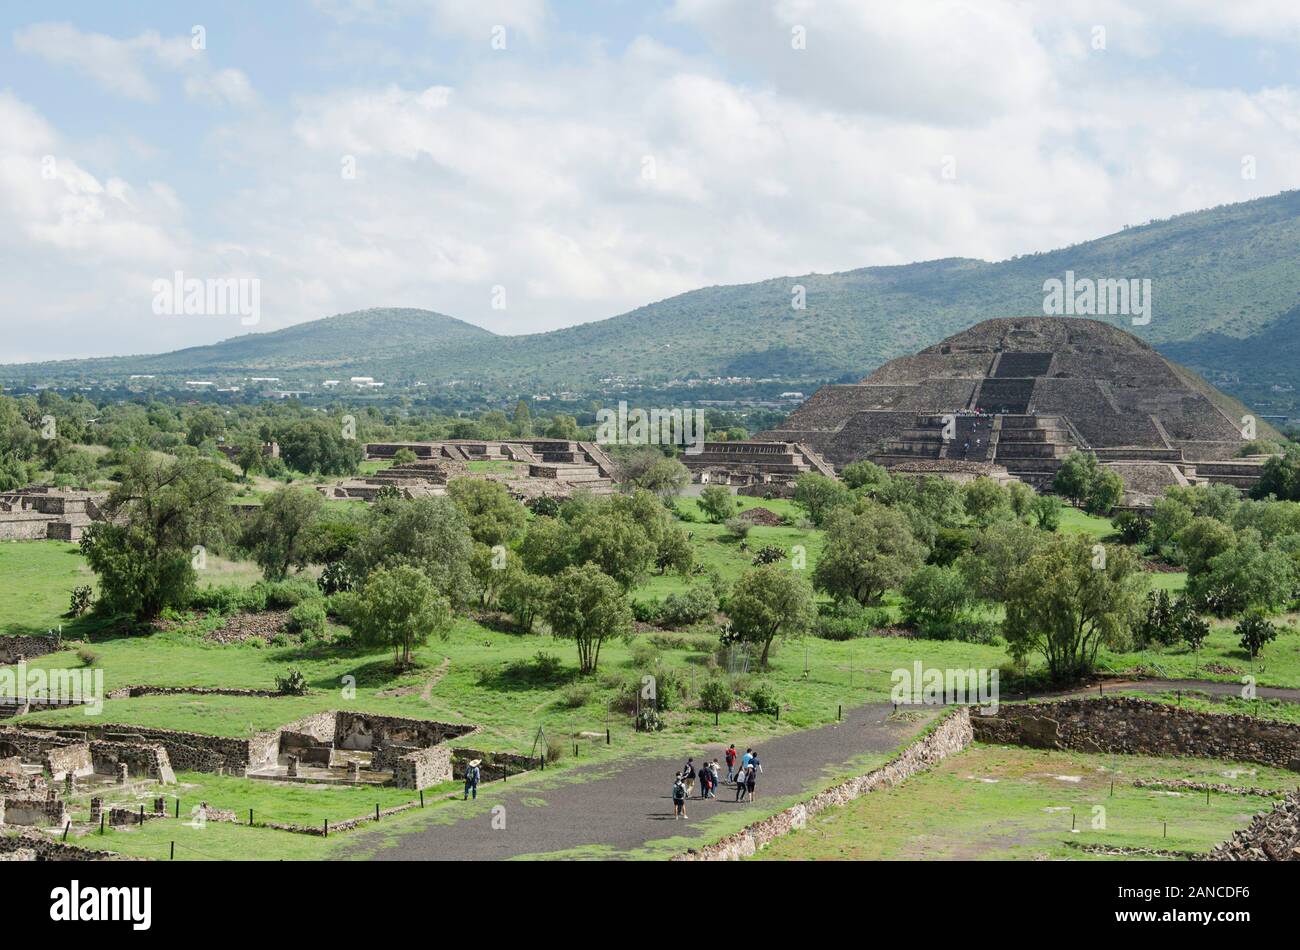 Pyramid of the Moon, piramide de la luna, and Avenue of the dead, Calzada de los muertos, in Teotihuacan, an ancient Mesoamerican city located in a su Stock Photo